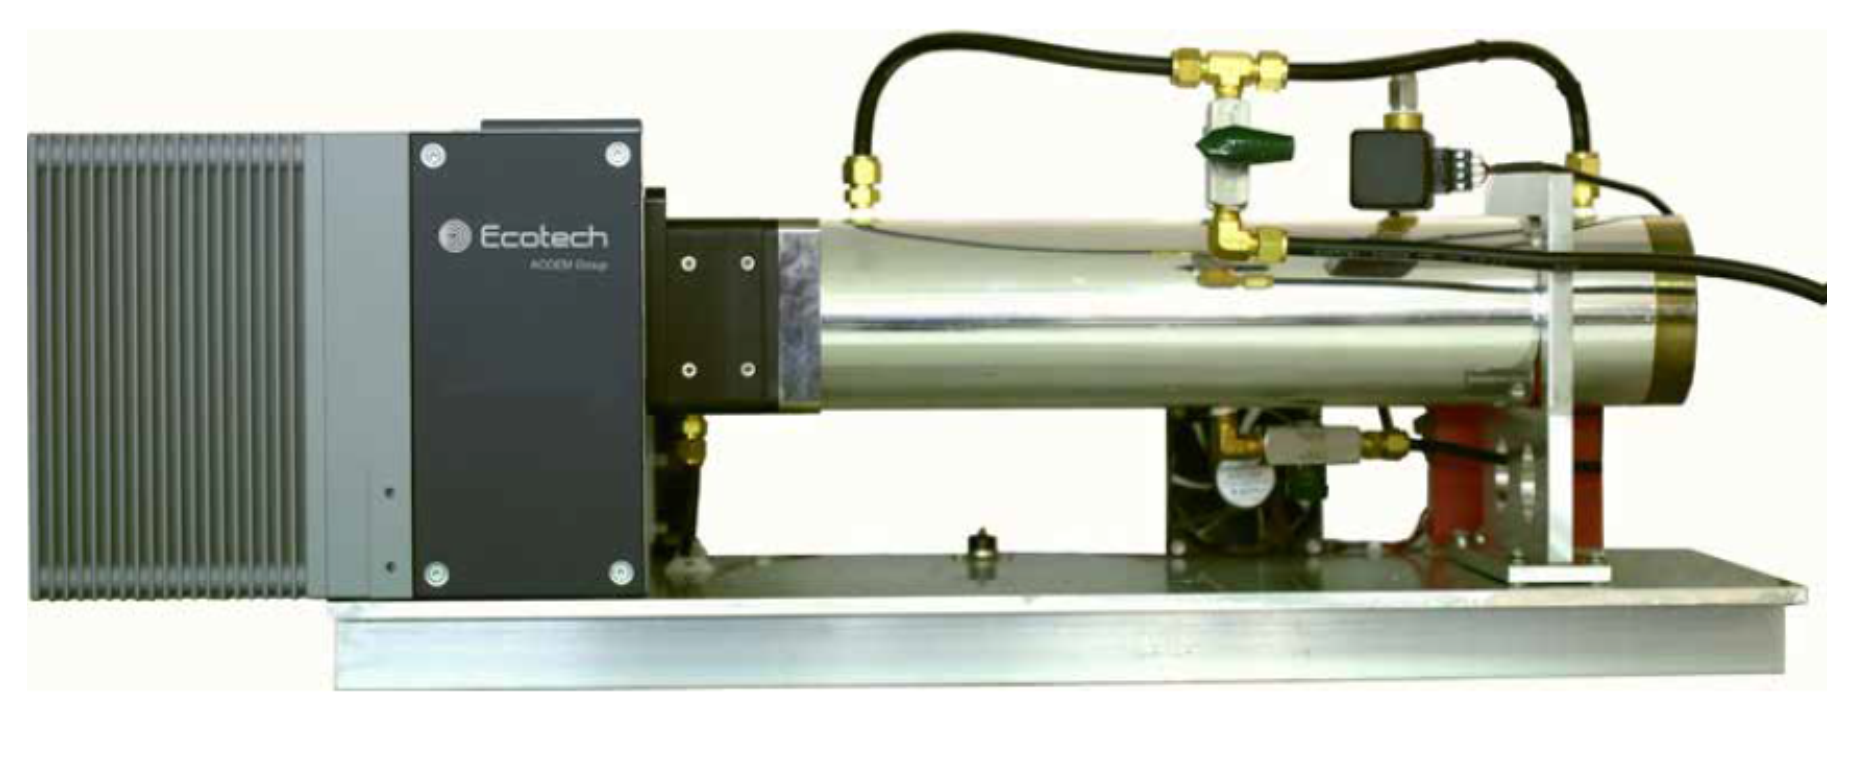 Ecotech Spectronus Fourier Transform Infrared Spectrometer (FTIR)